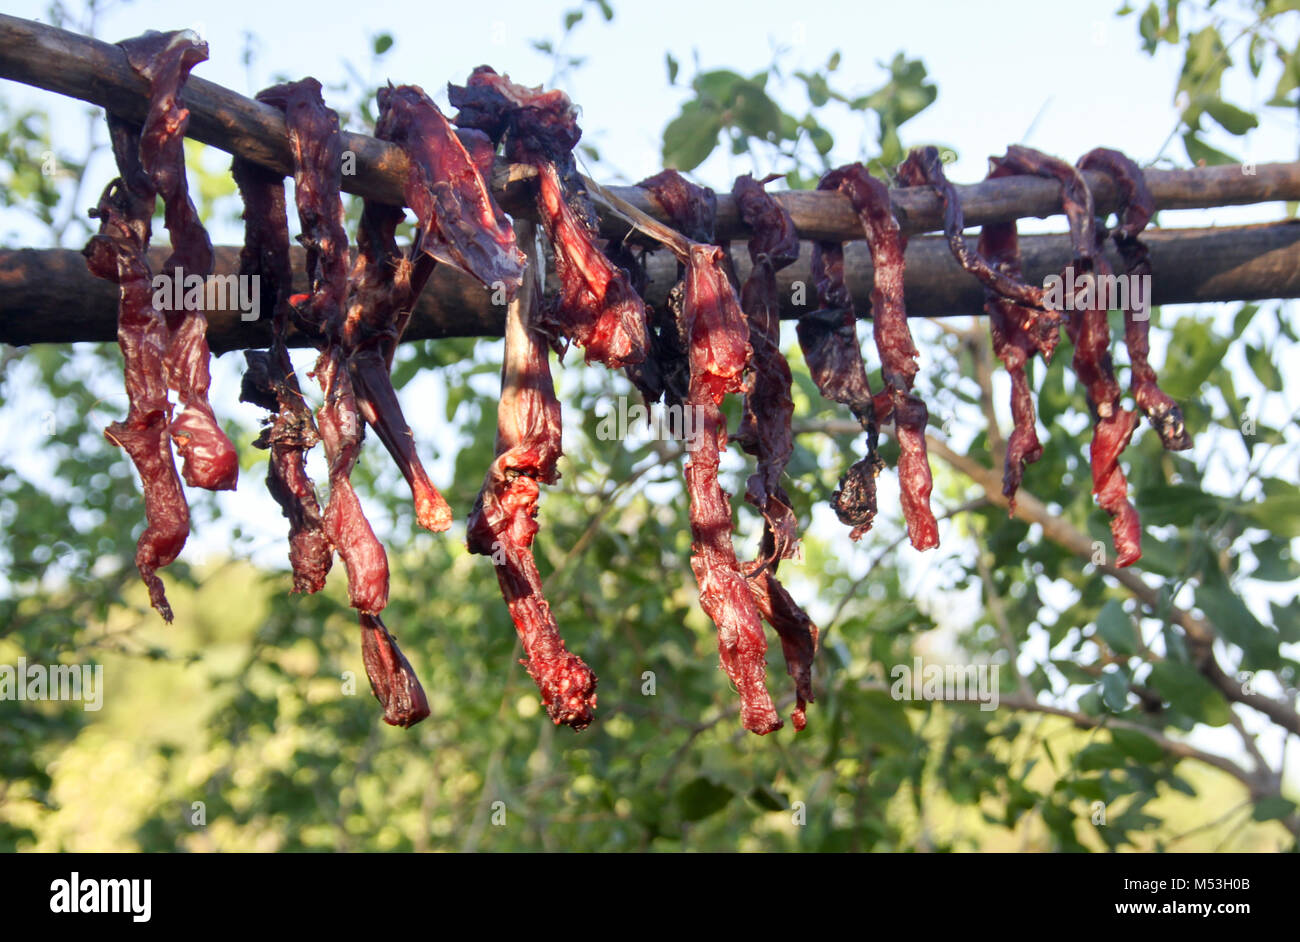 La viande est séchée au soleil par la tribu Hadza, lac Eyasi, nord de la Tanzanie Banque D'Images